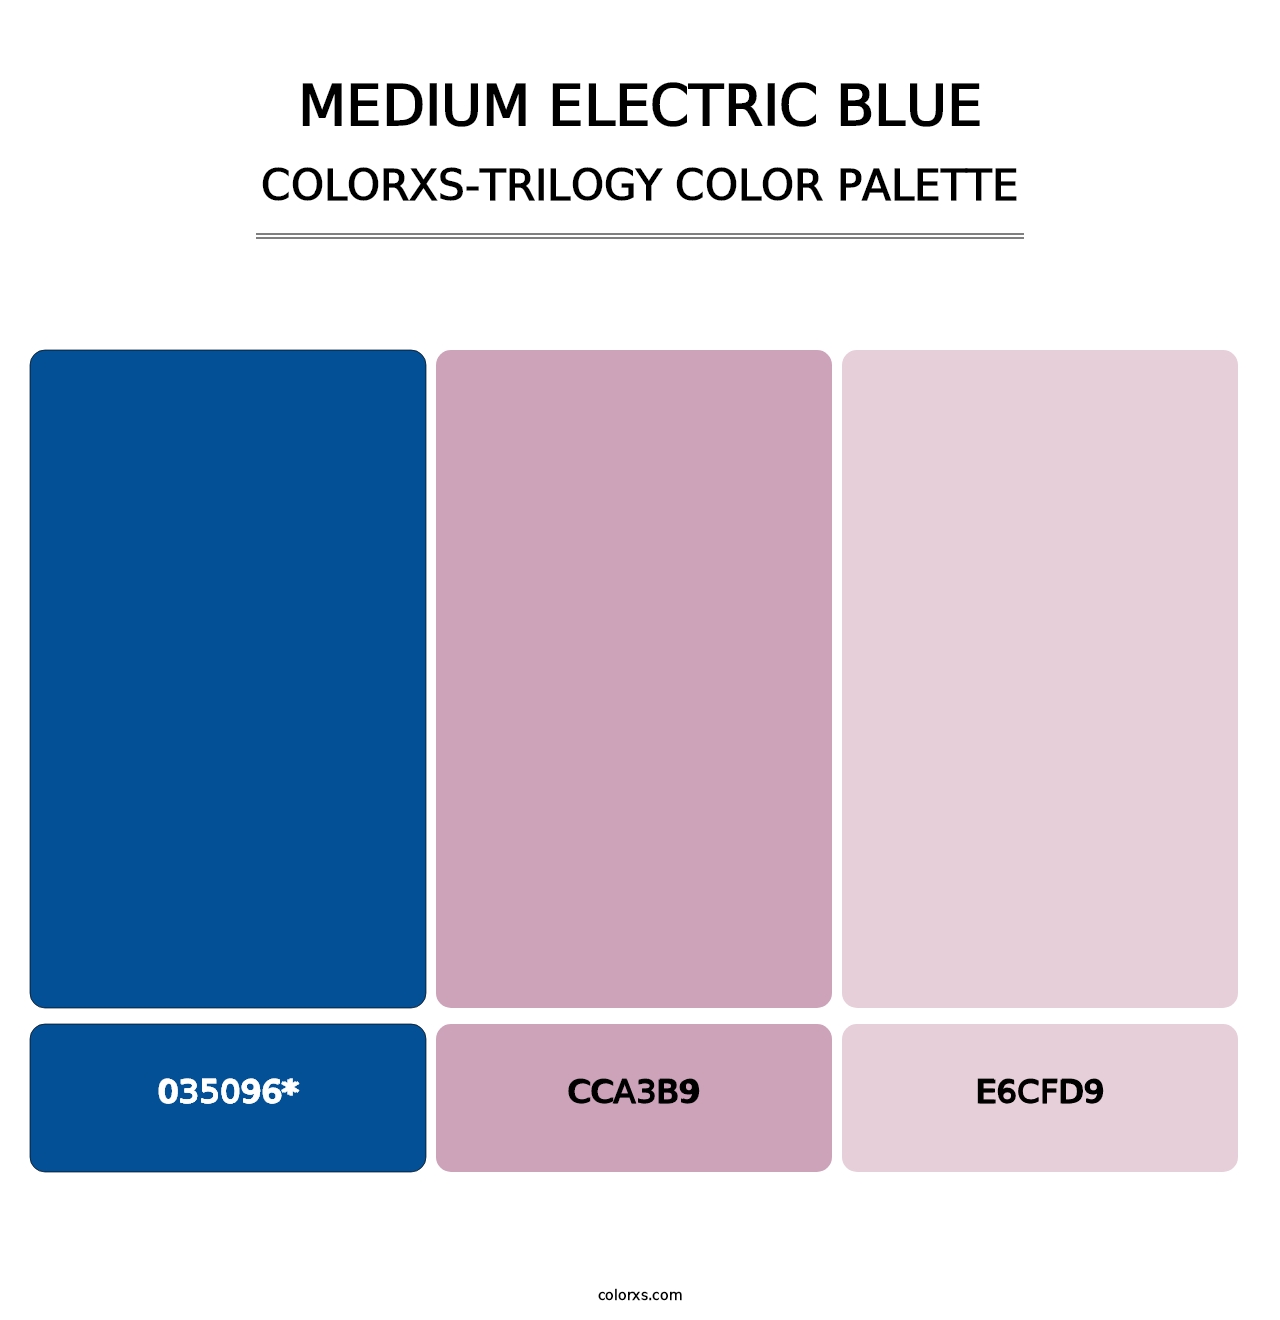 Medium Electric Blue - Colorxs Trilogy Palette